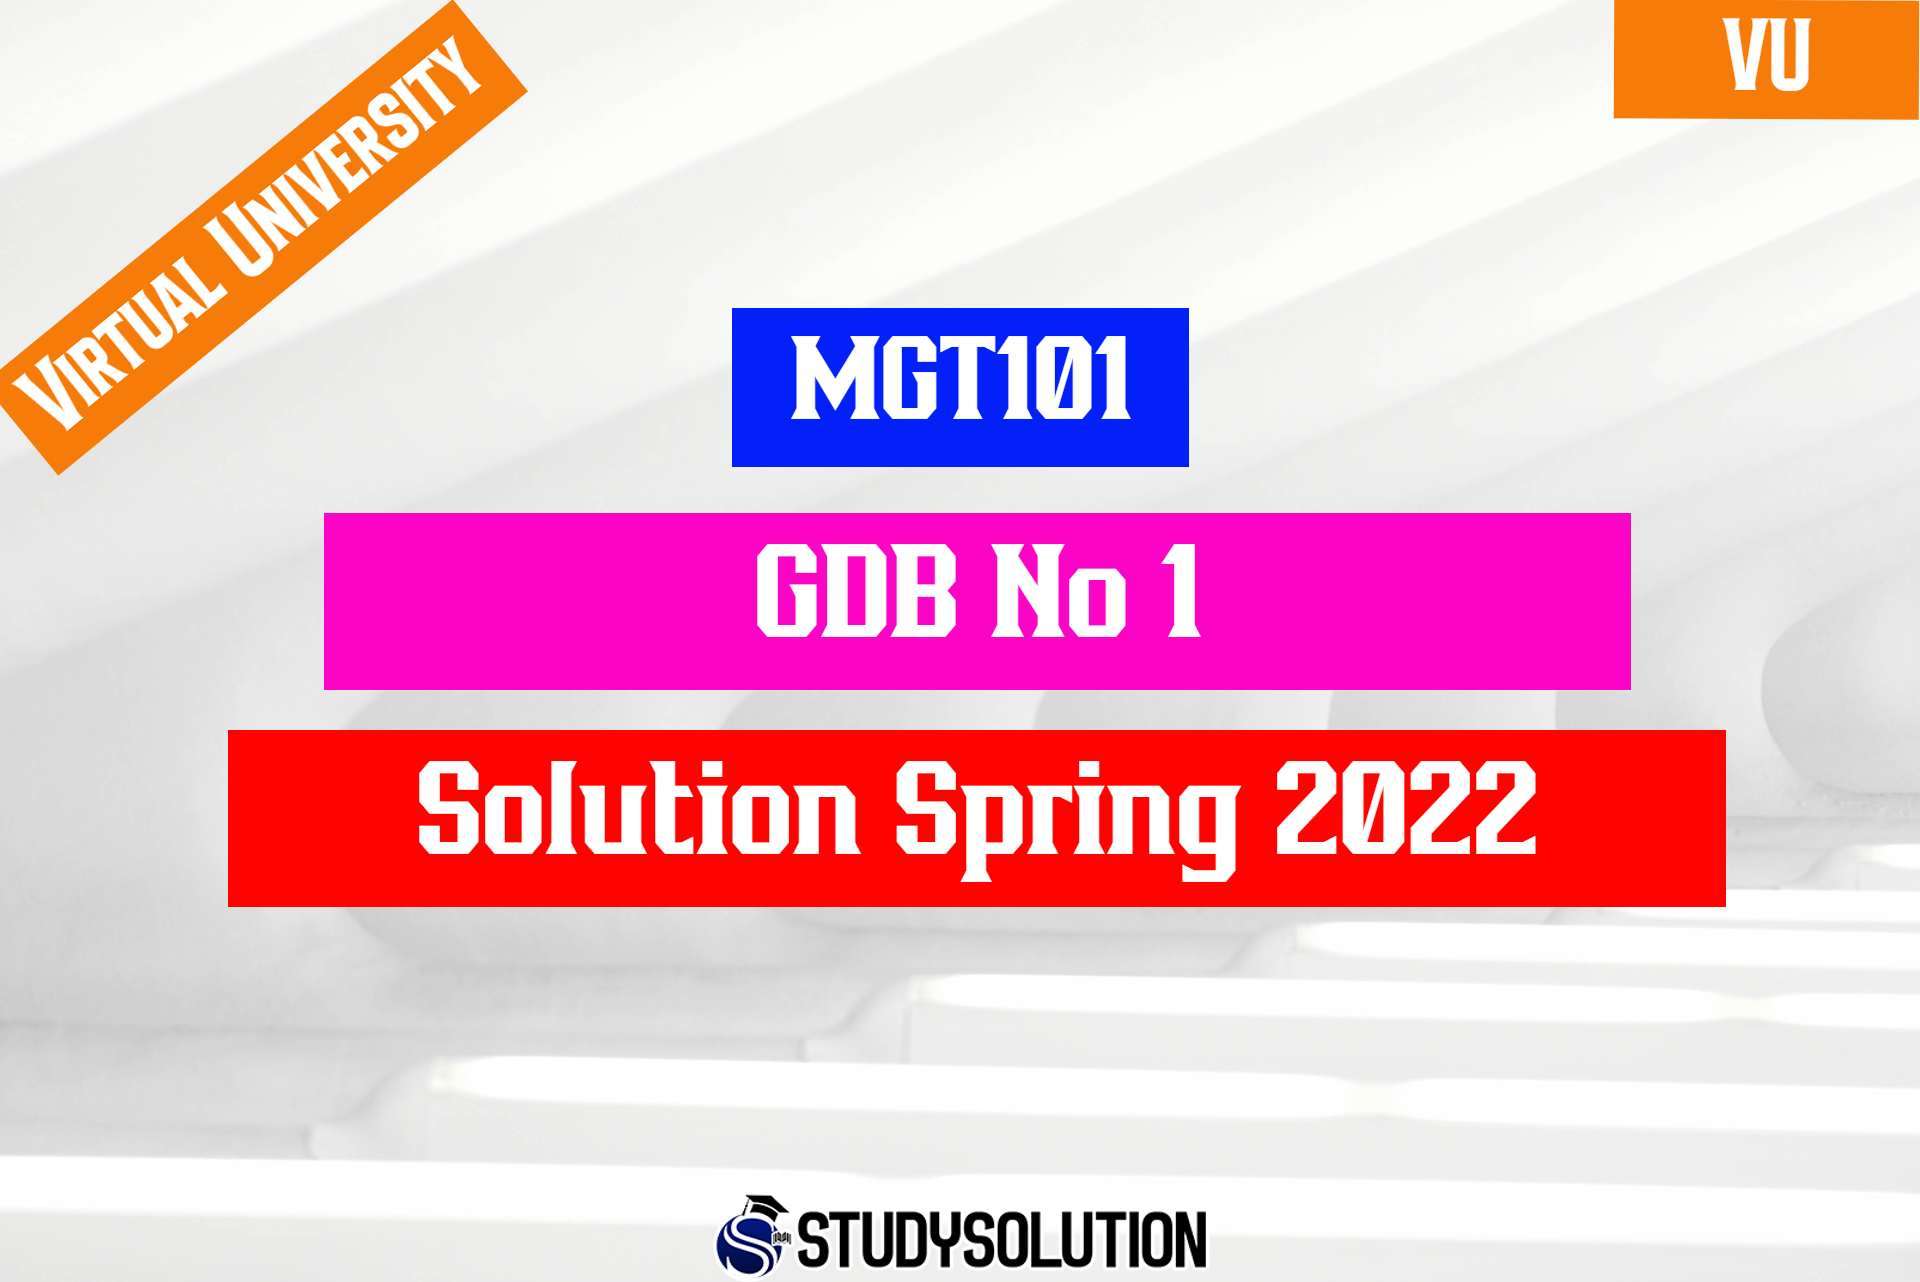 MGT101 GDB No 1 Solution Spring 2022